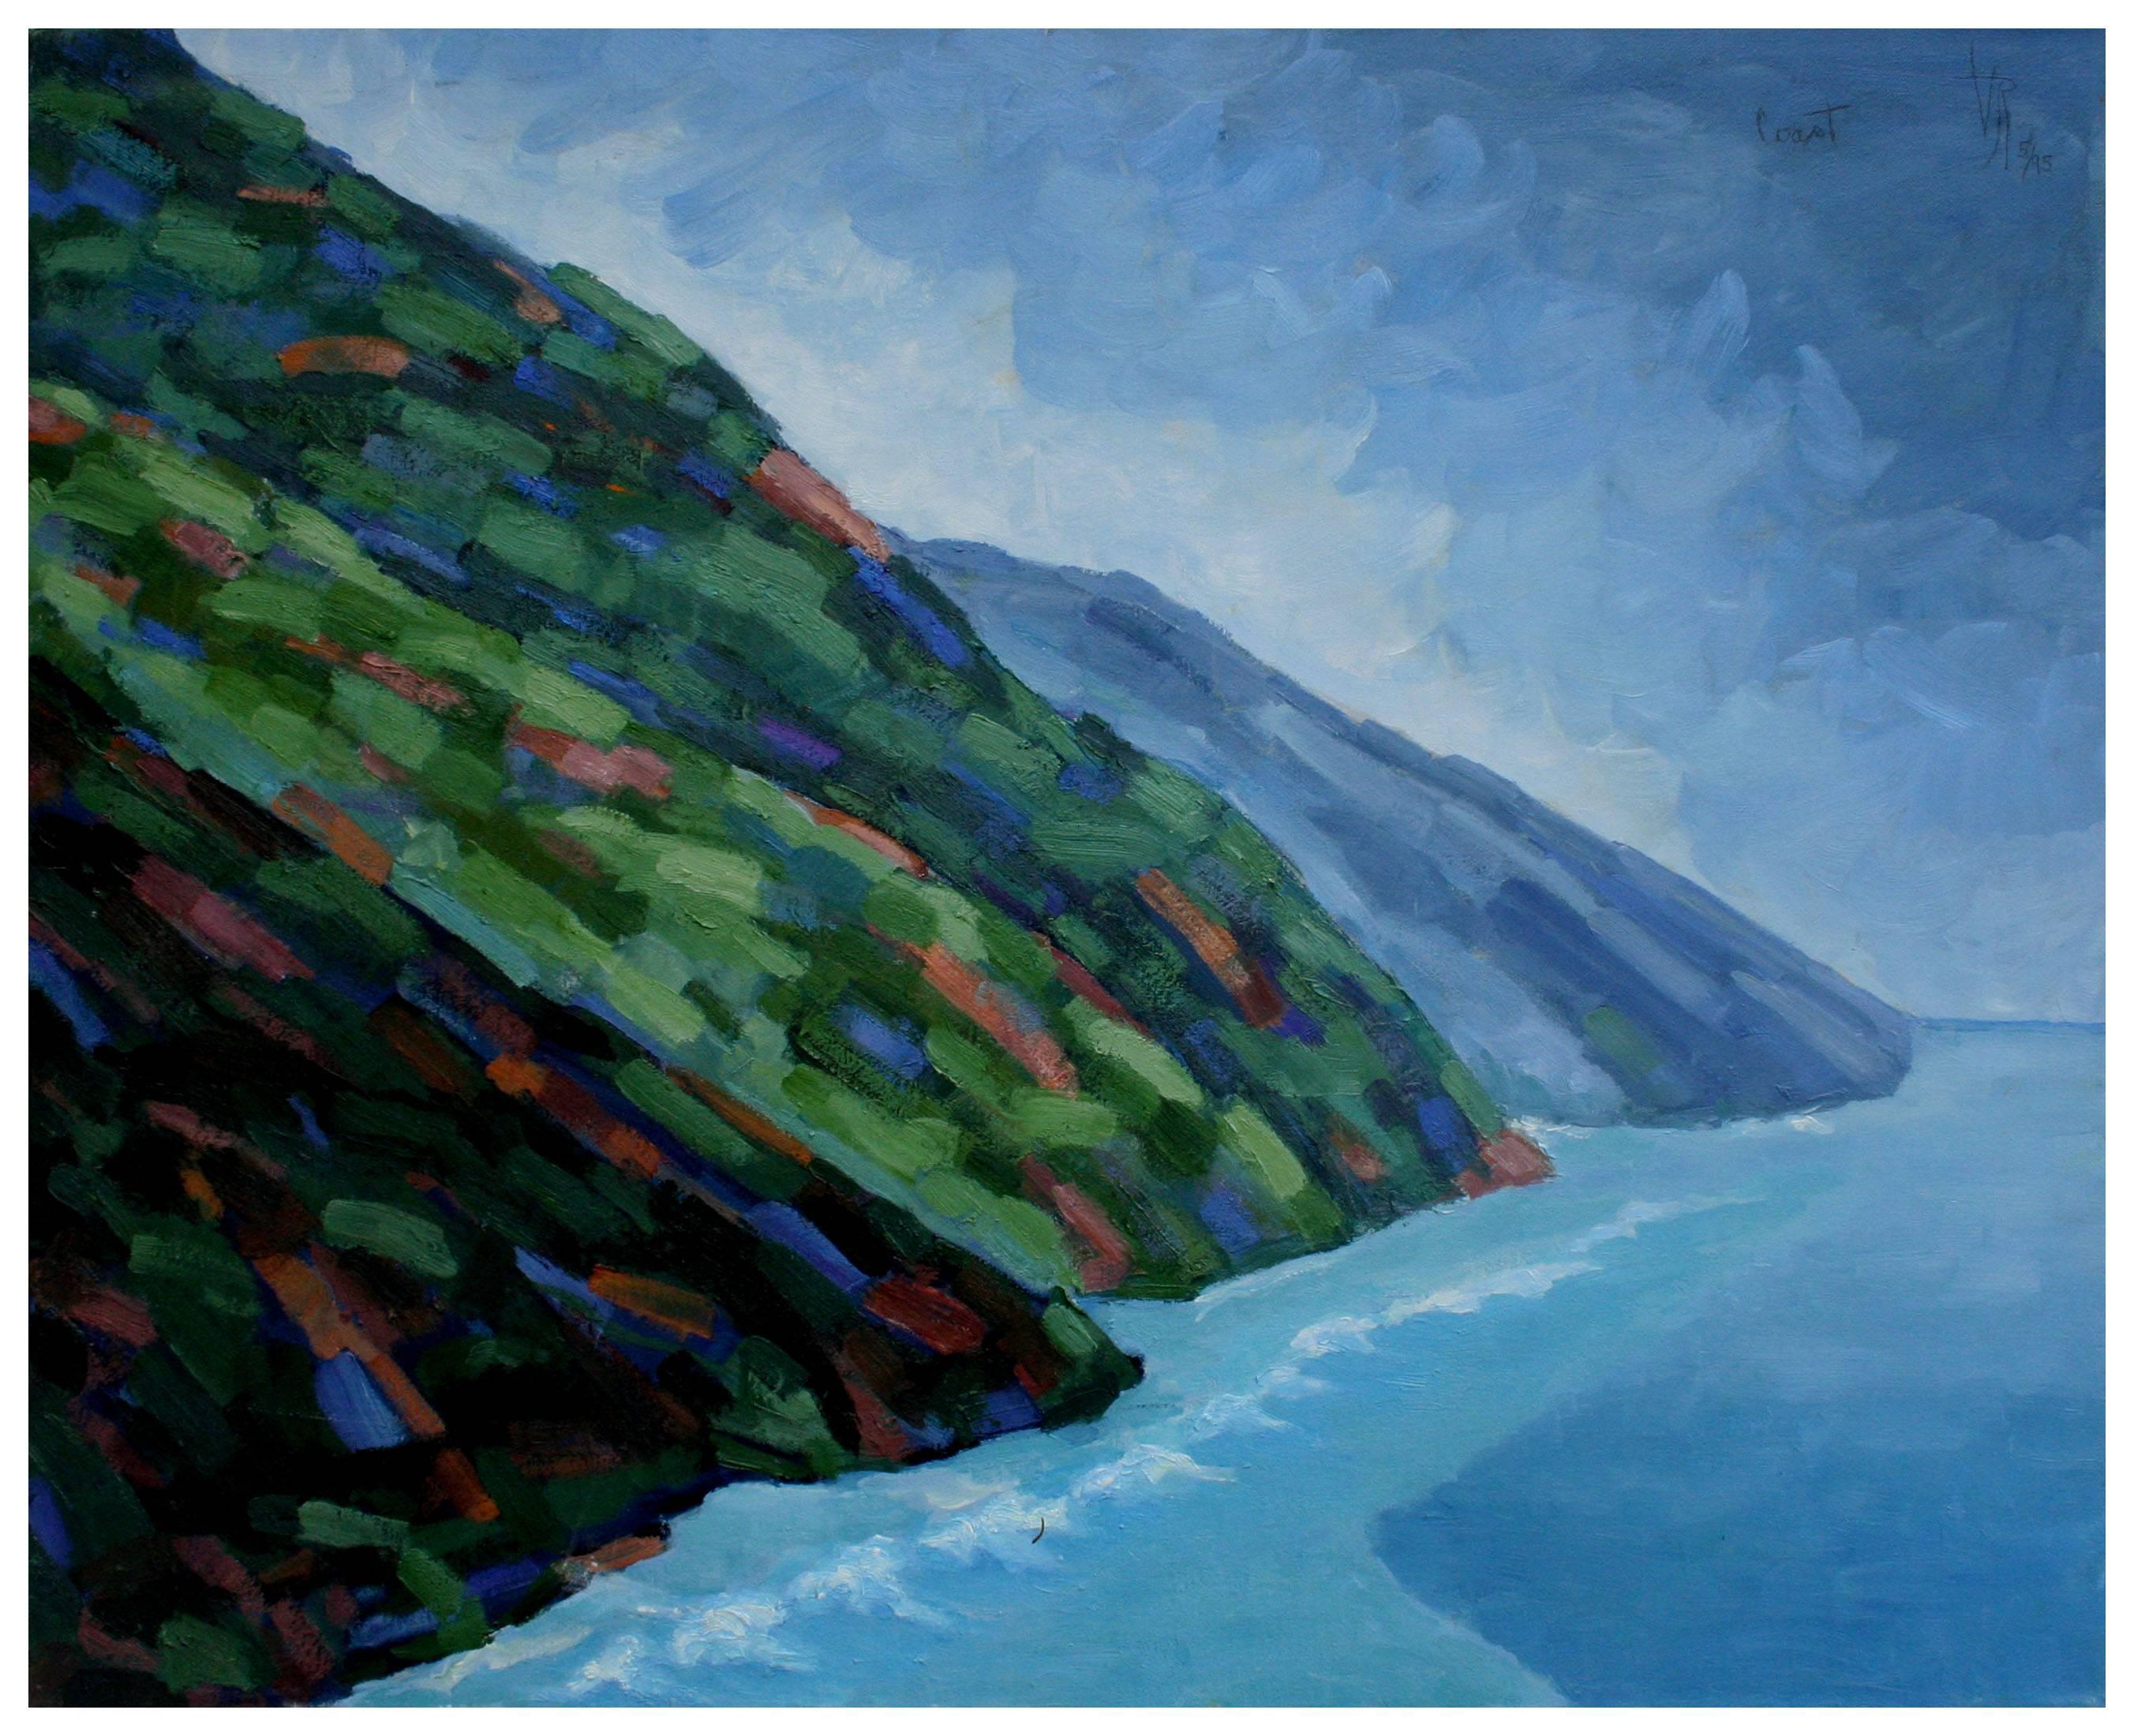 Virginia Rogers Landscape Painting - Fauvist Big Sur Coast Landscape